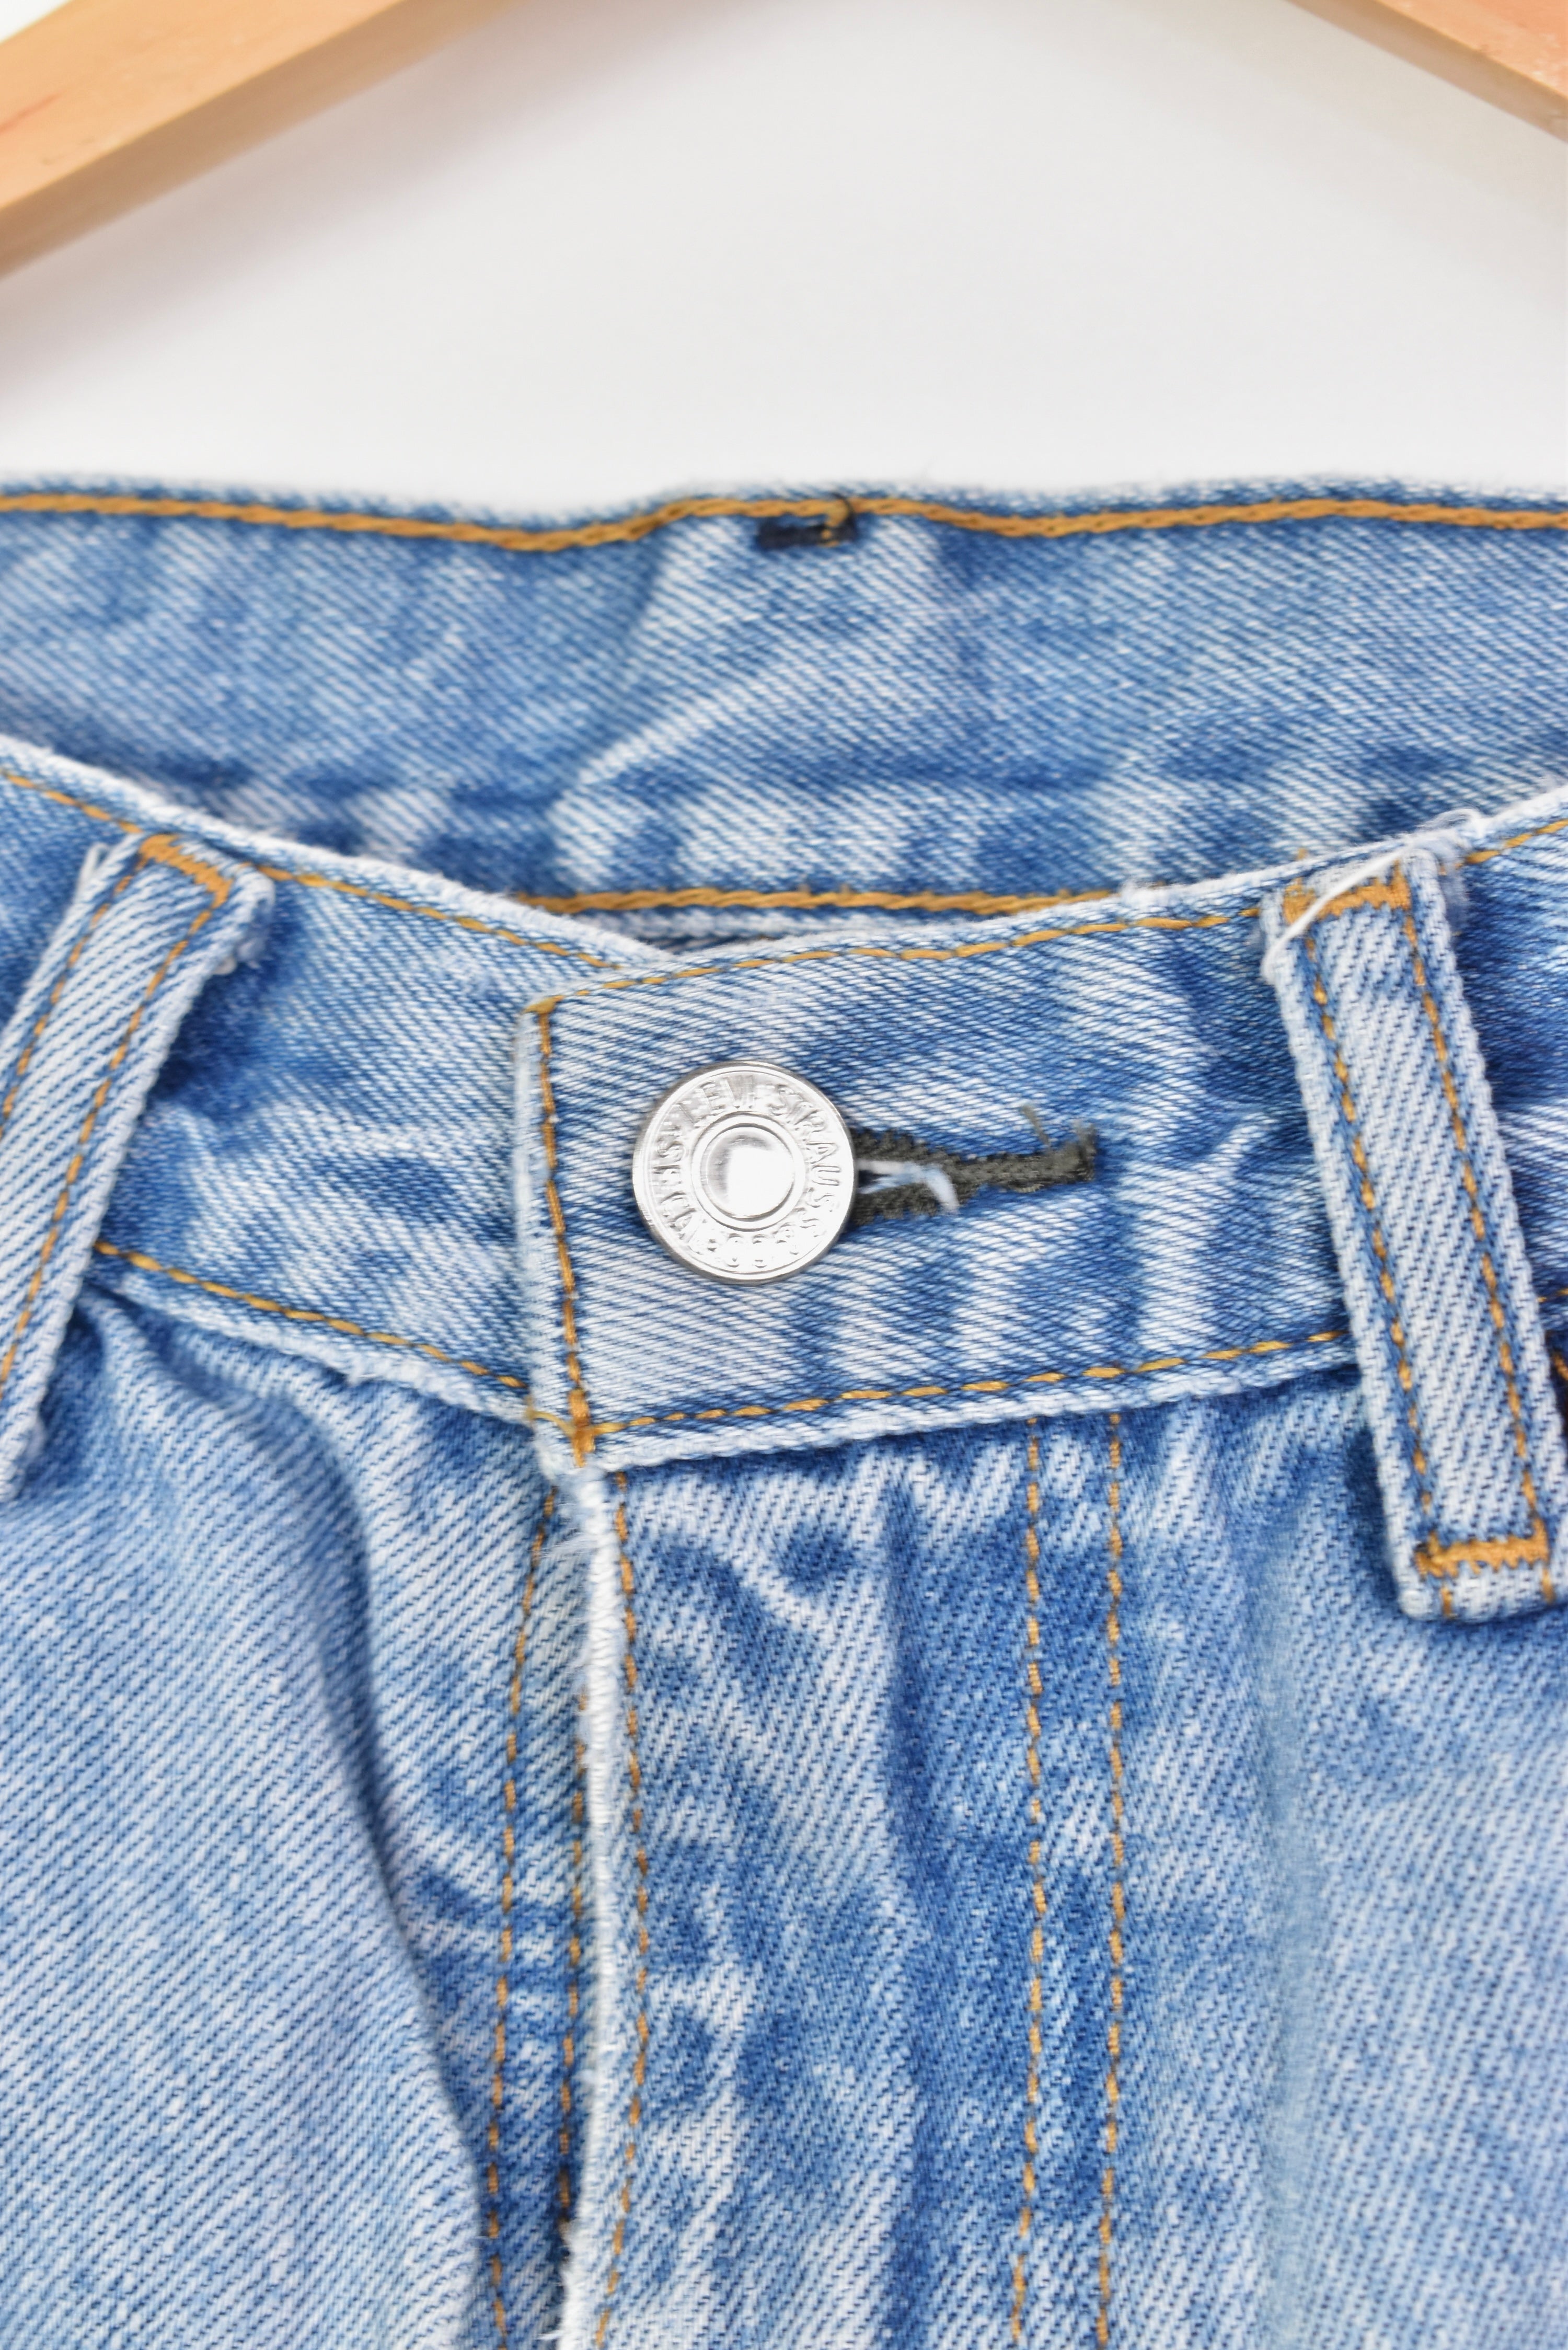 Women's vintage Levi's shorts, rework denim jeans - blue, W32" LEVIS